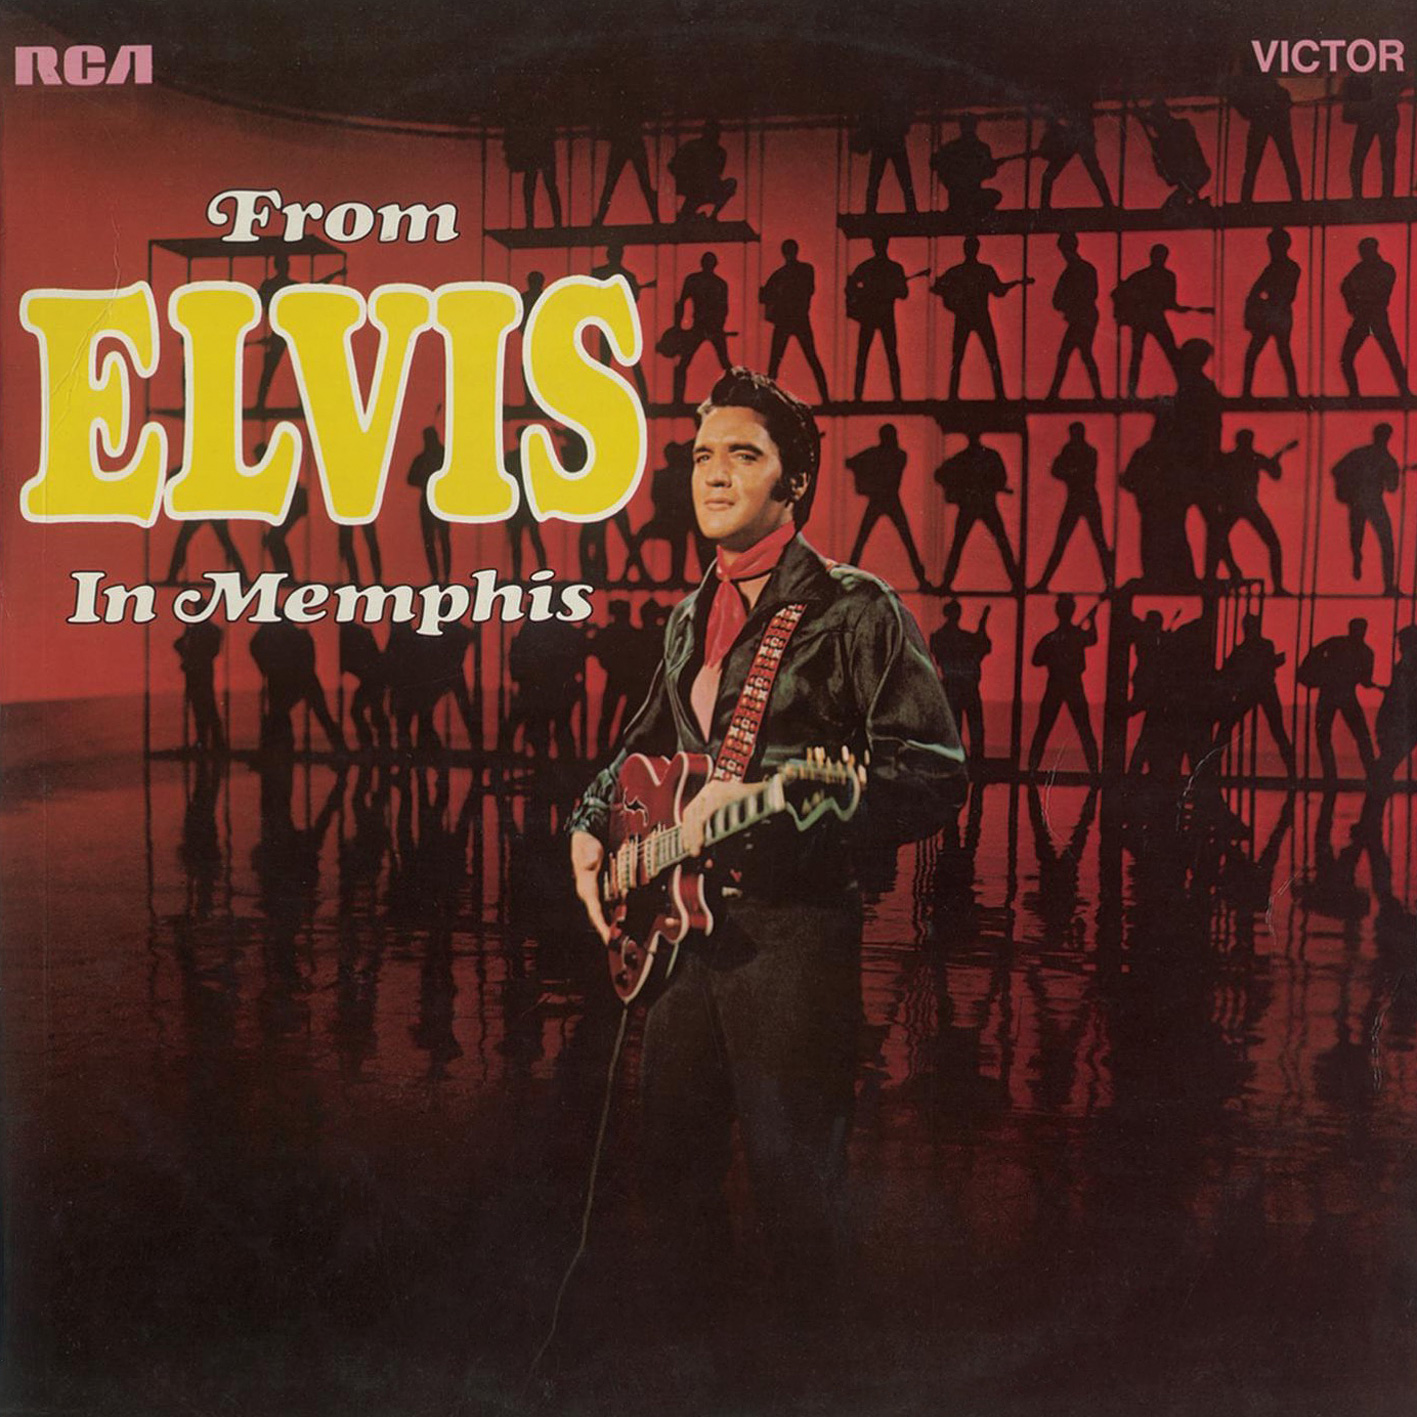 Elvis Presley – From Elvis In Memphis (1969/2015) [HRA FLAC 24bit/96kHz]